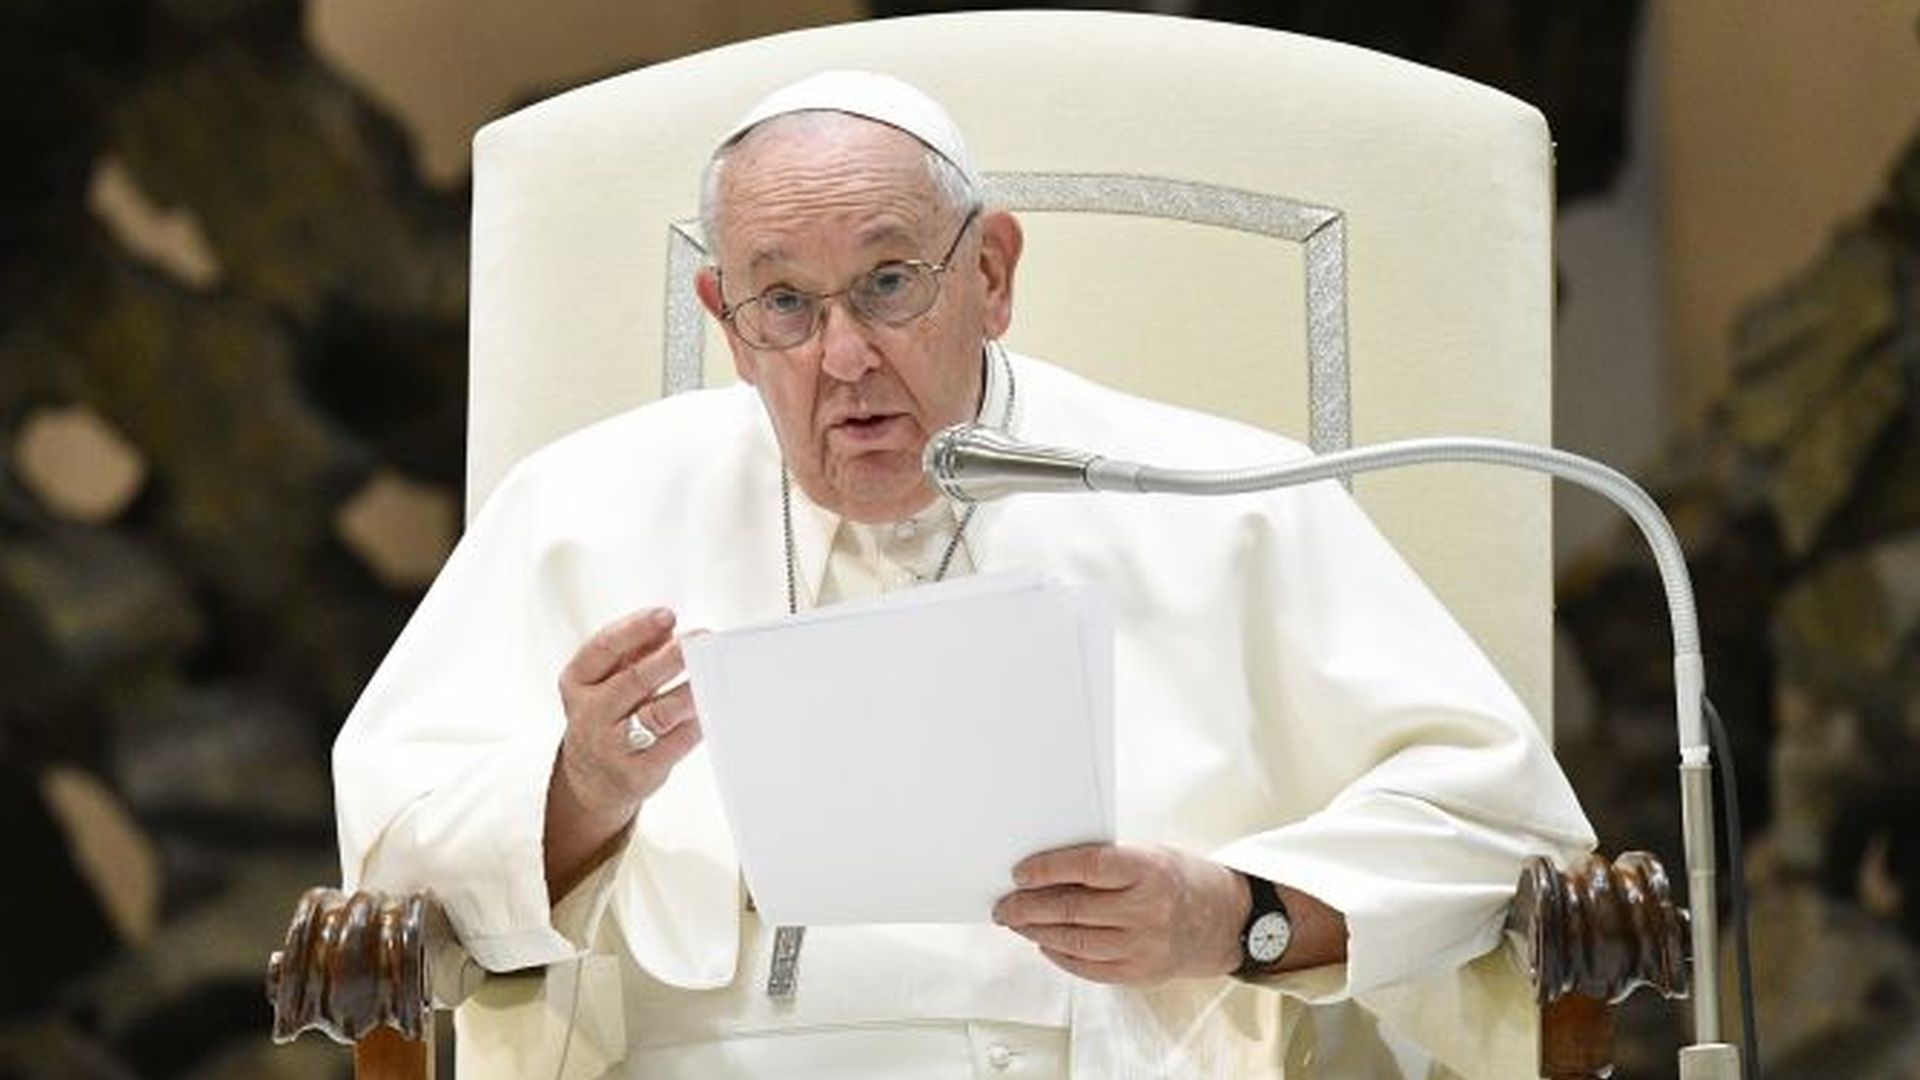 Ferenc pápa tovább szigorít: az egyházi szervezeteket vezető világiakon is számonkéri a szexuális visszaéléseket